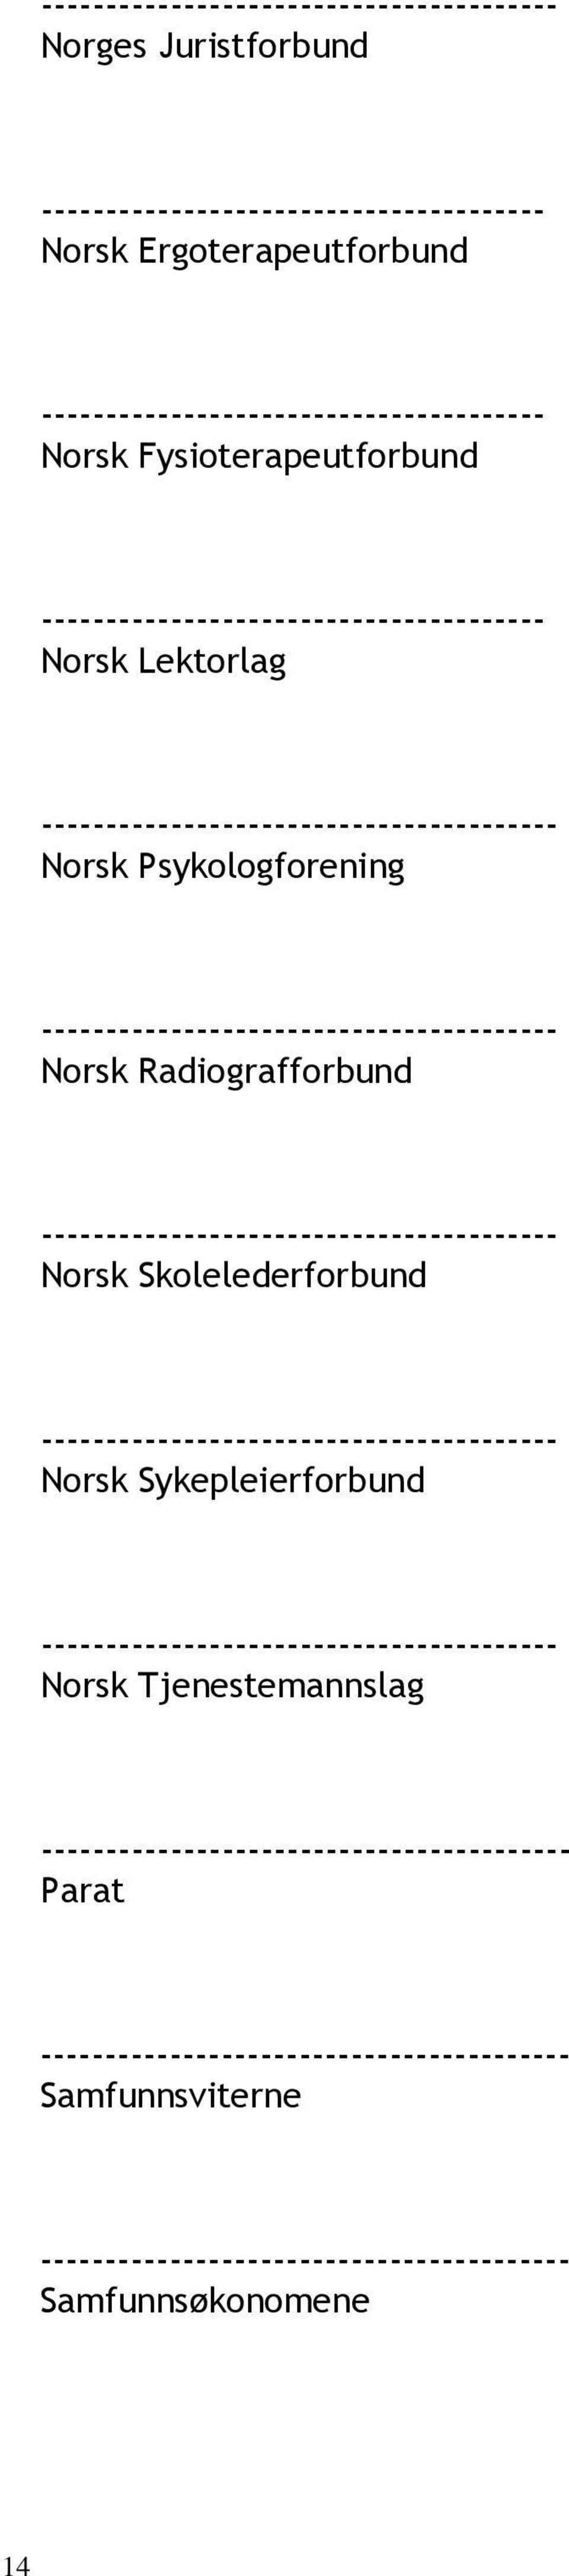 Norsk Radiografforbund ---------------------------------------- Norsk Skolelederforbund ---------------------------------------- Norsk Sykepleierforbund